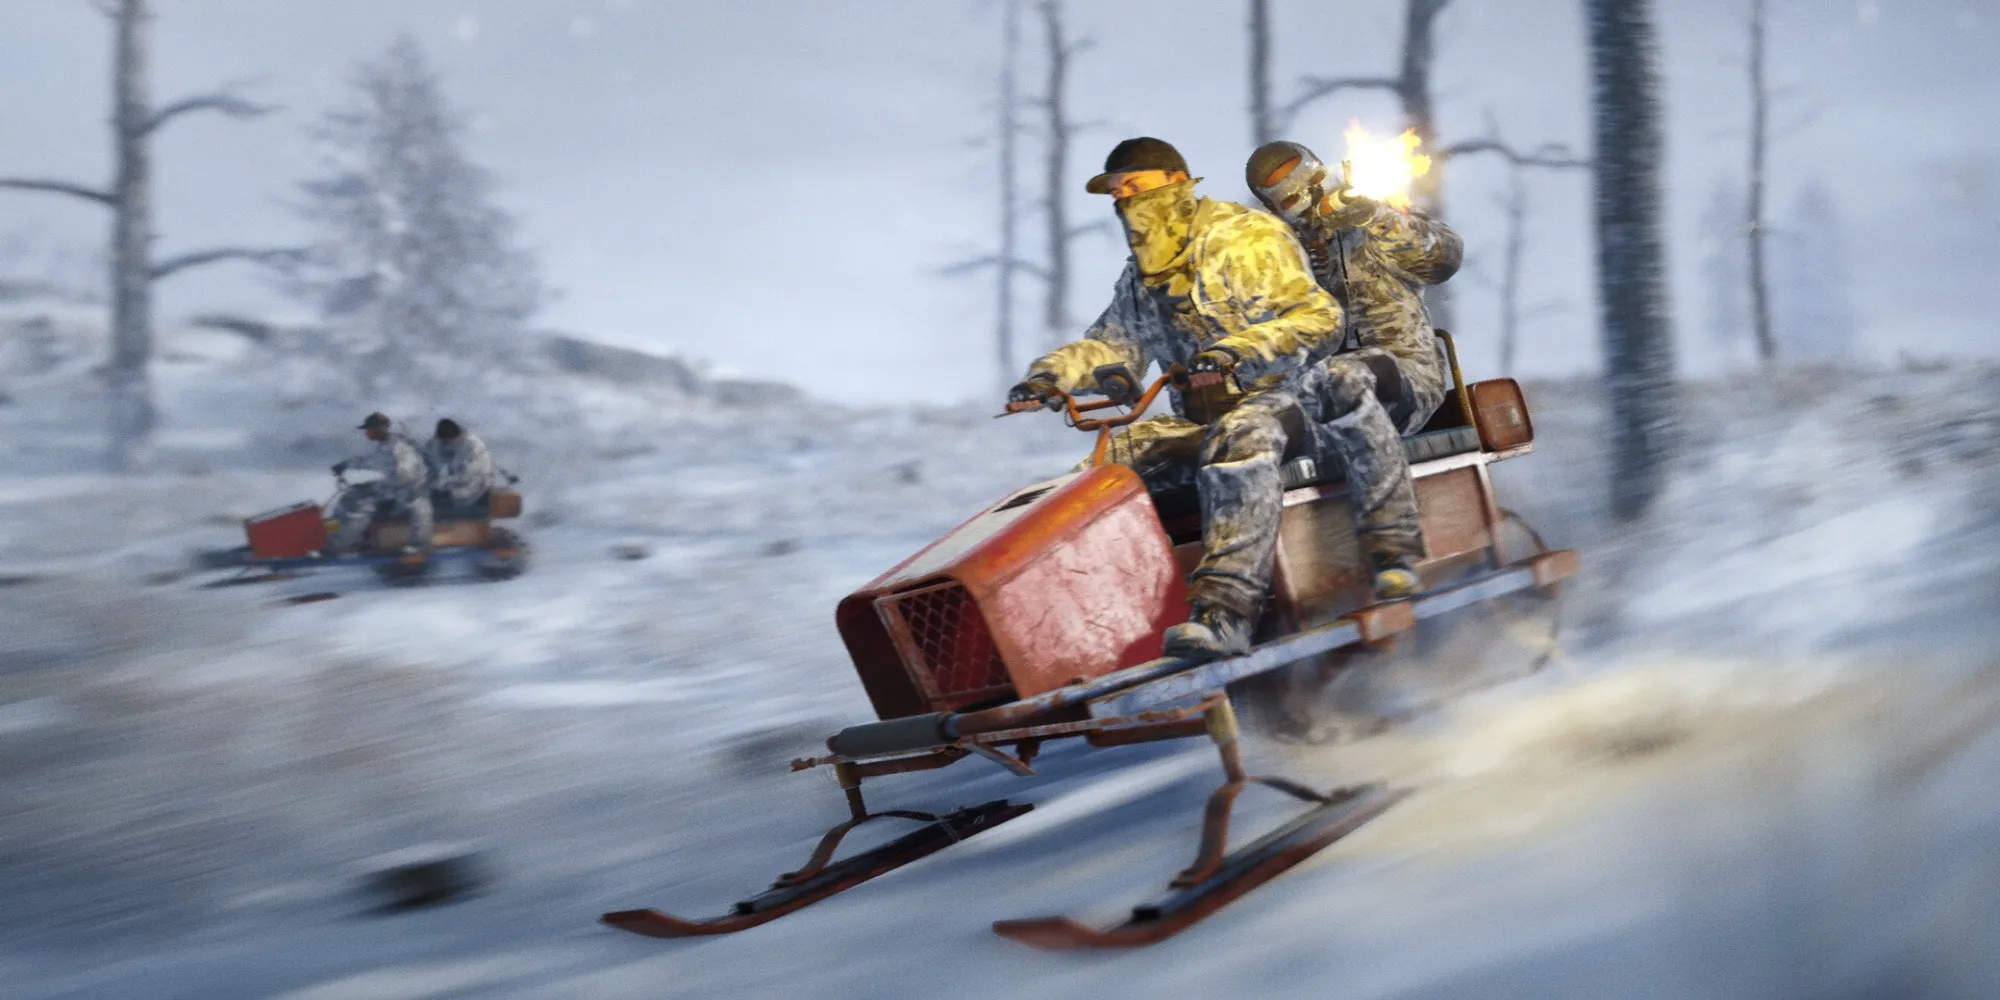 Giocatore cavalca una motoslitta per cacciare nemici